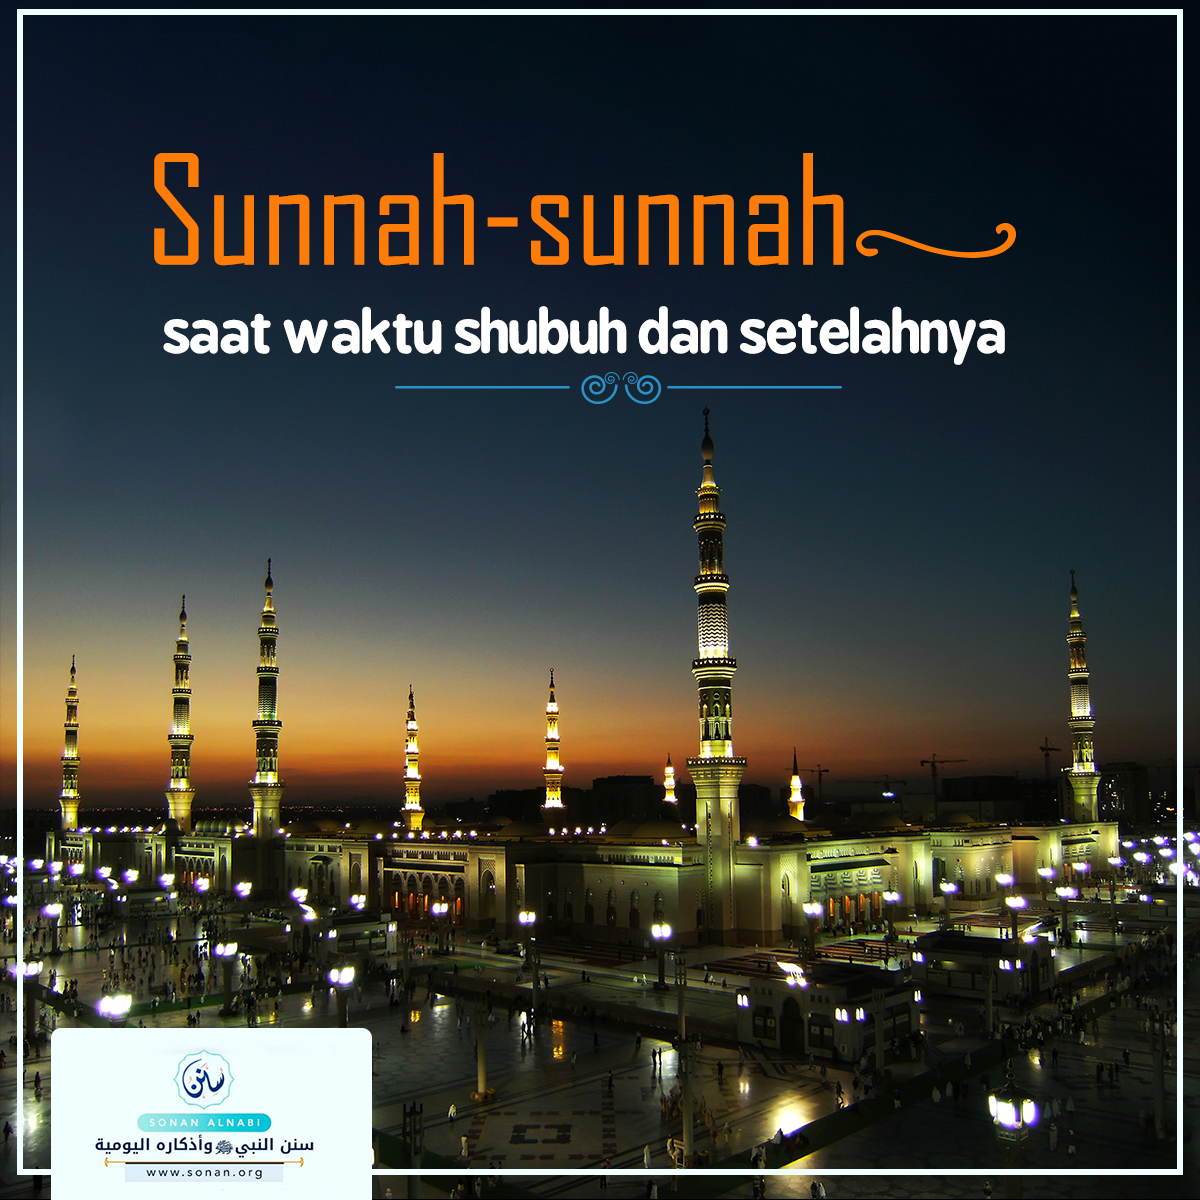 photo_Sunnah-sunnah saat waktu shubuh dan setelahnya